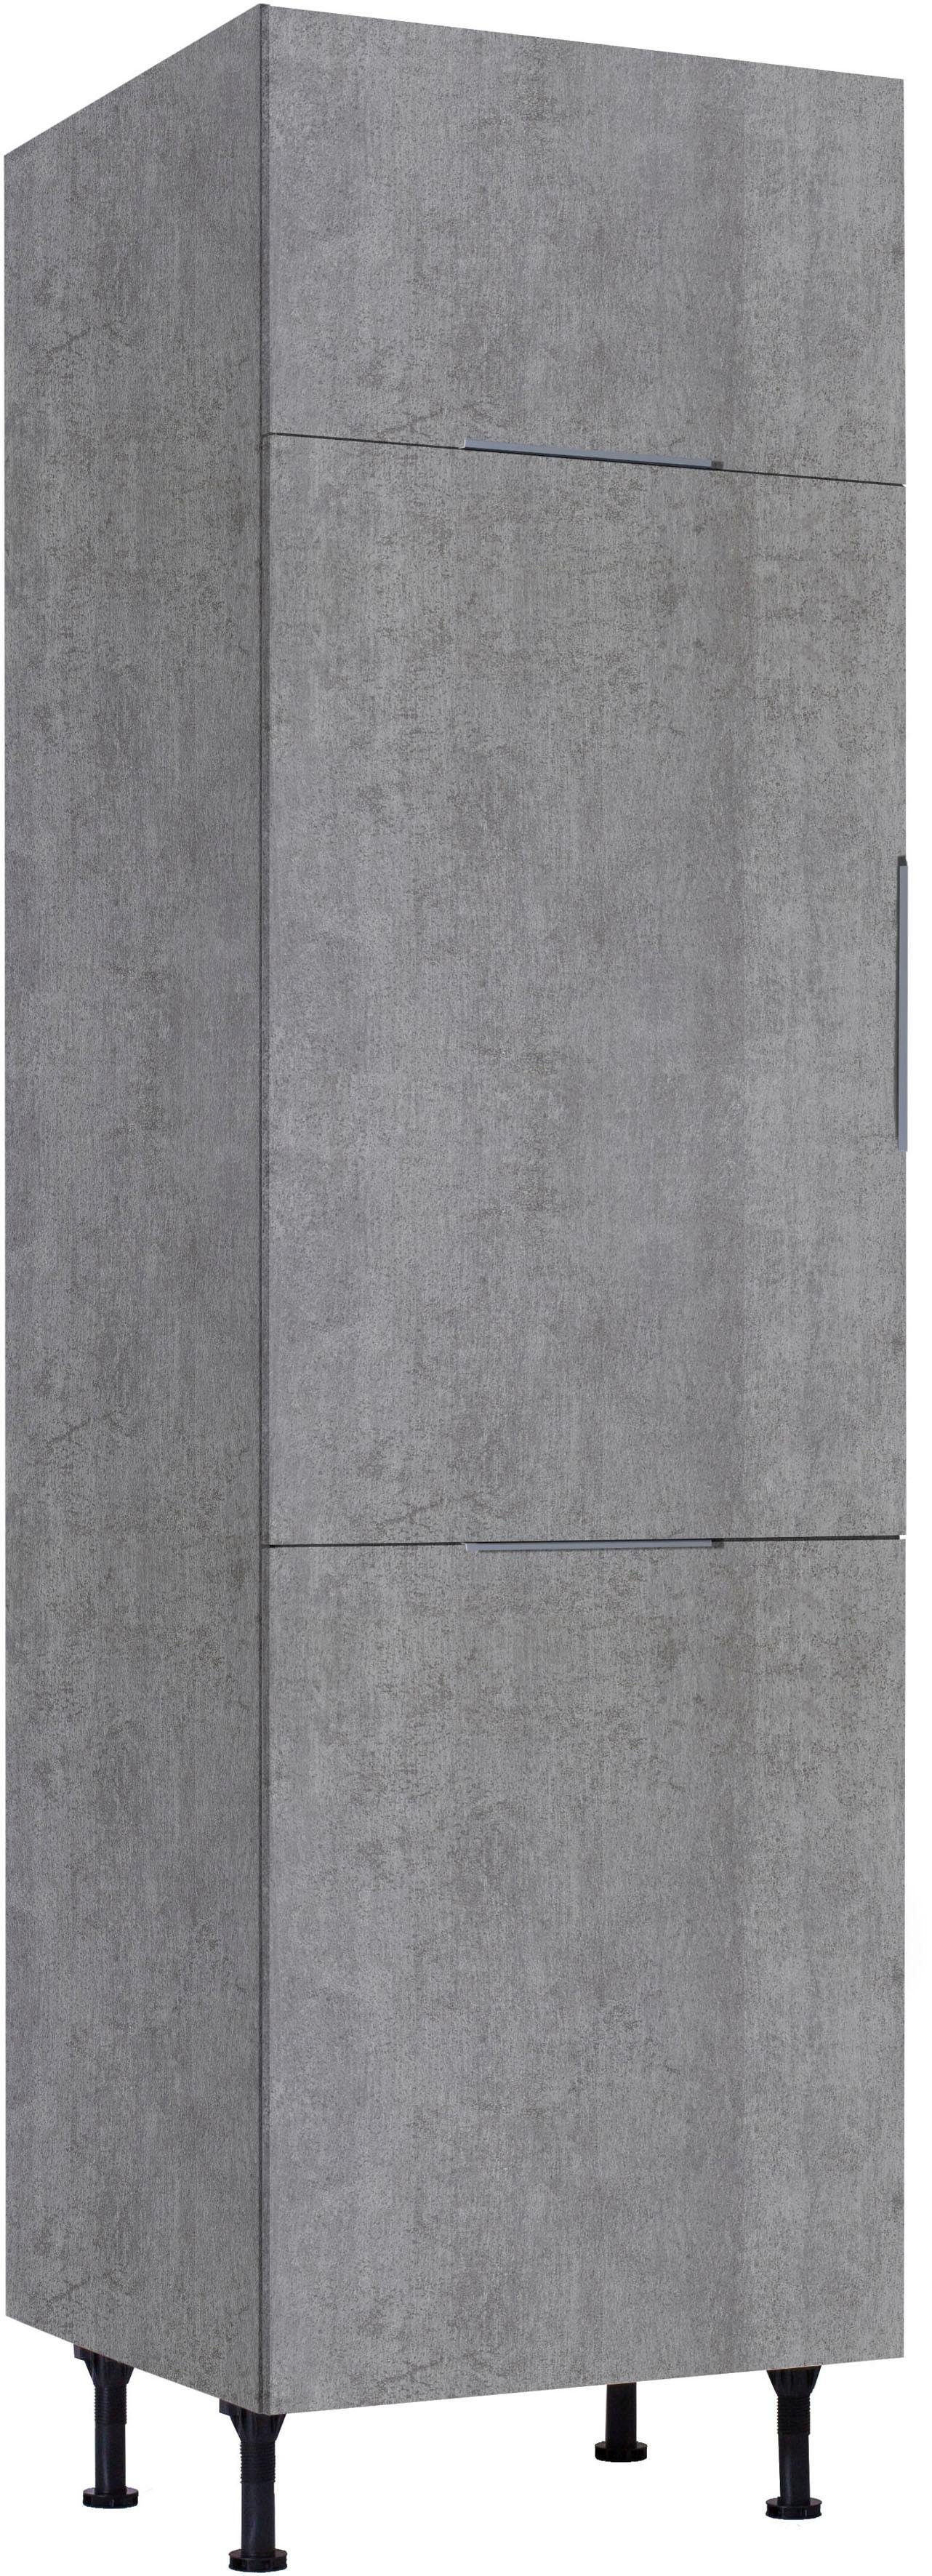 OPTIFIT | betonfarben Tara betonfarben Kühlumbauschrank